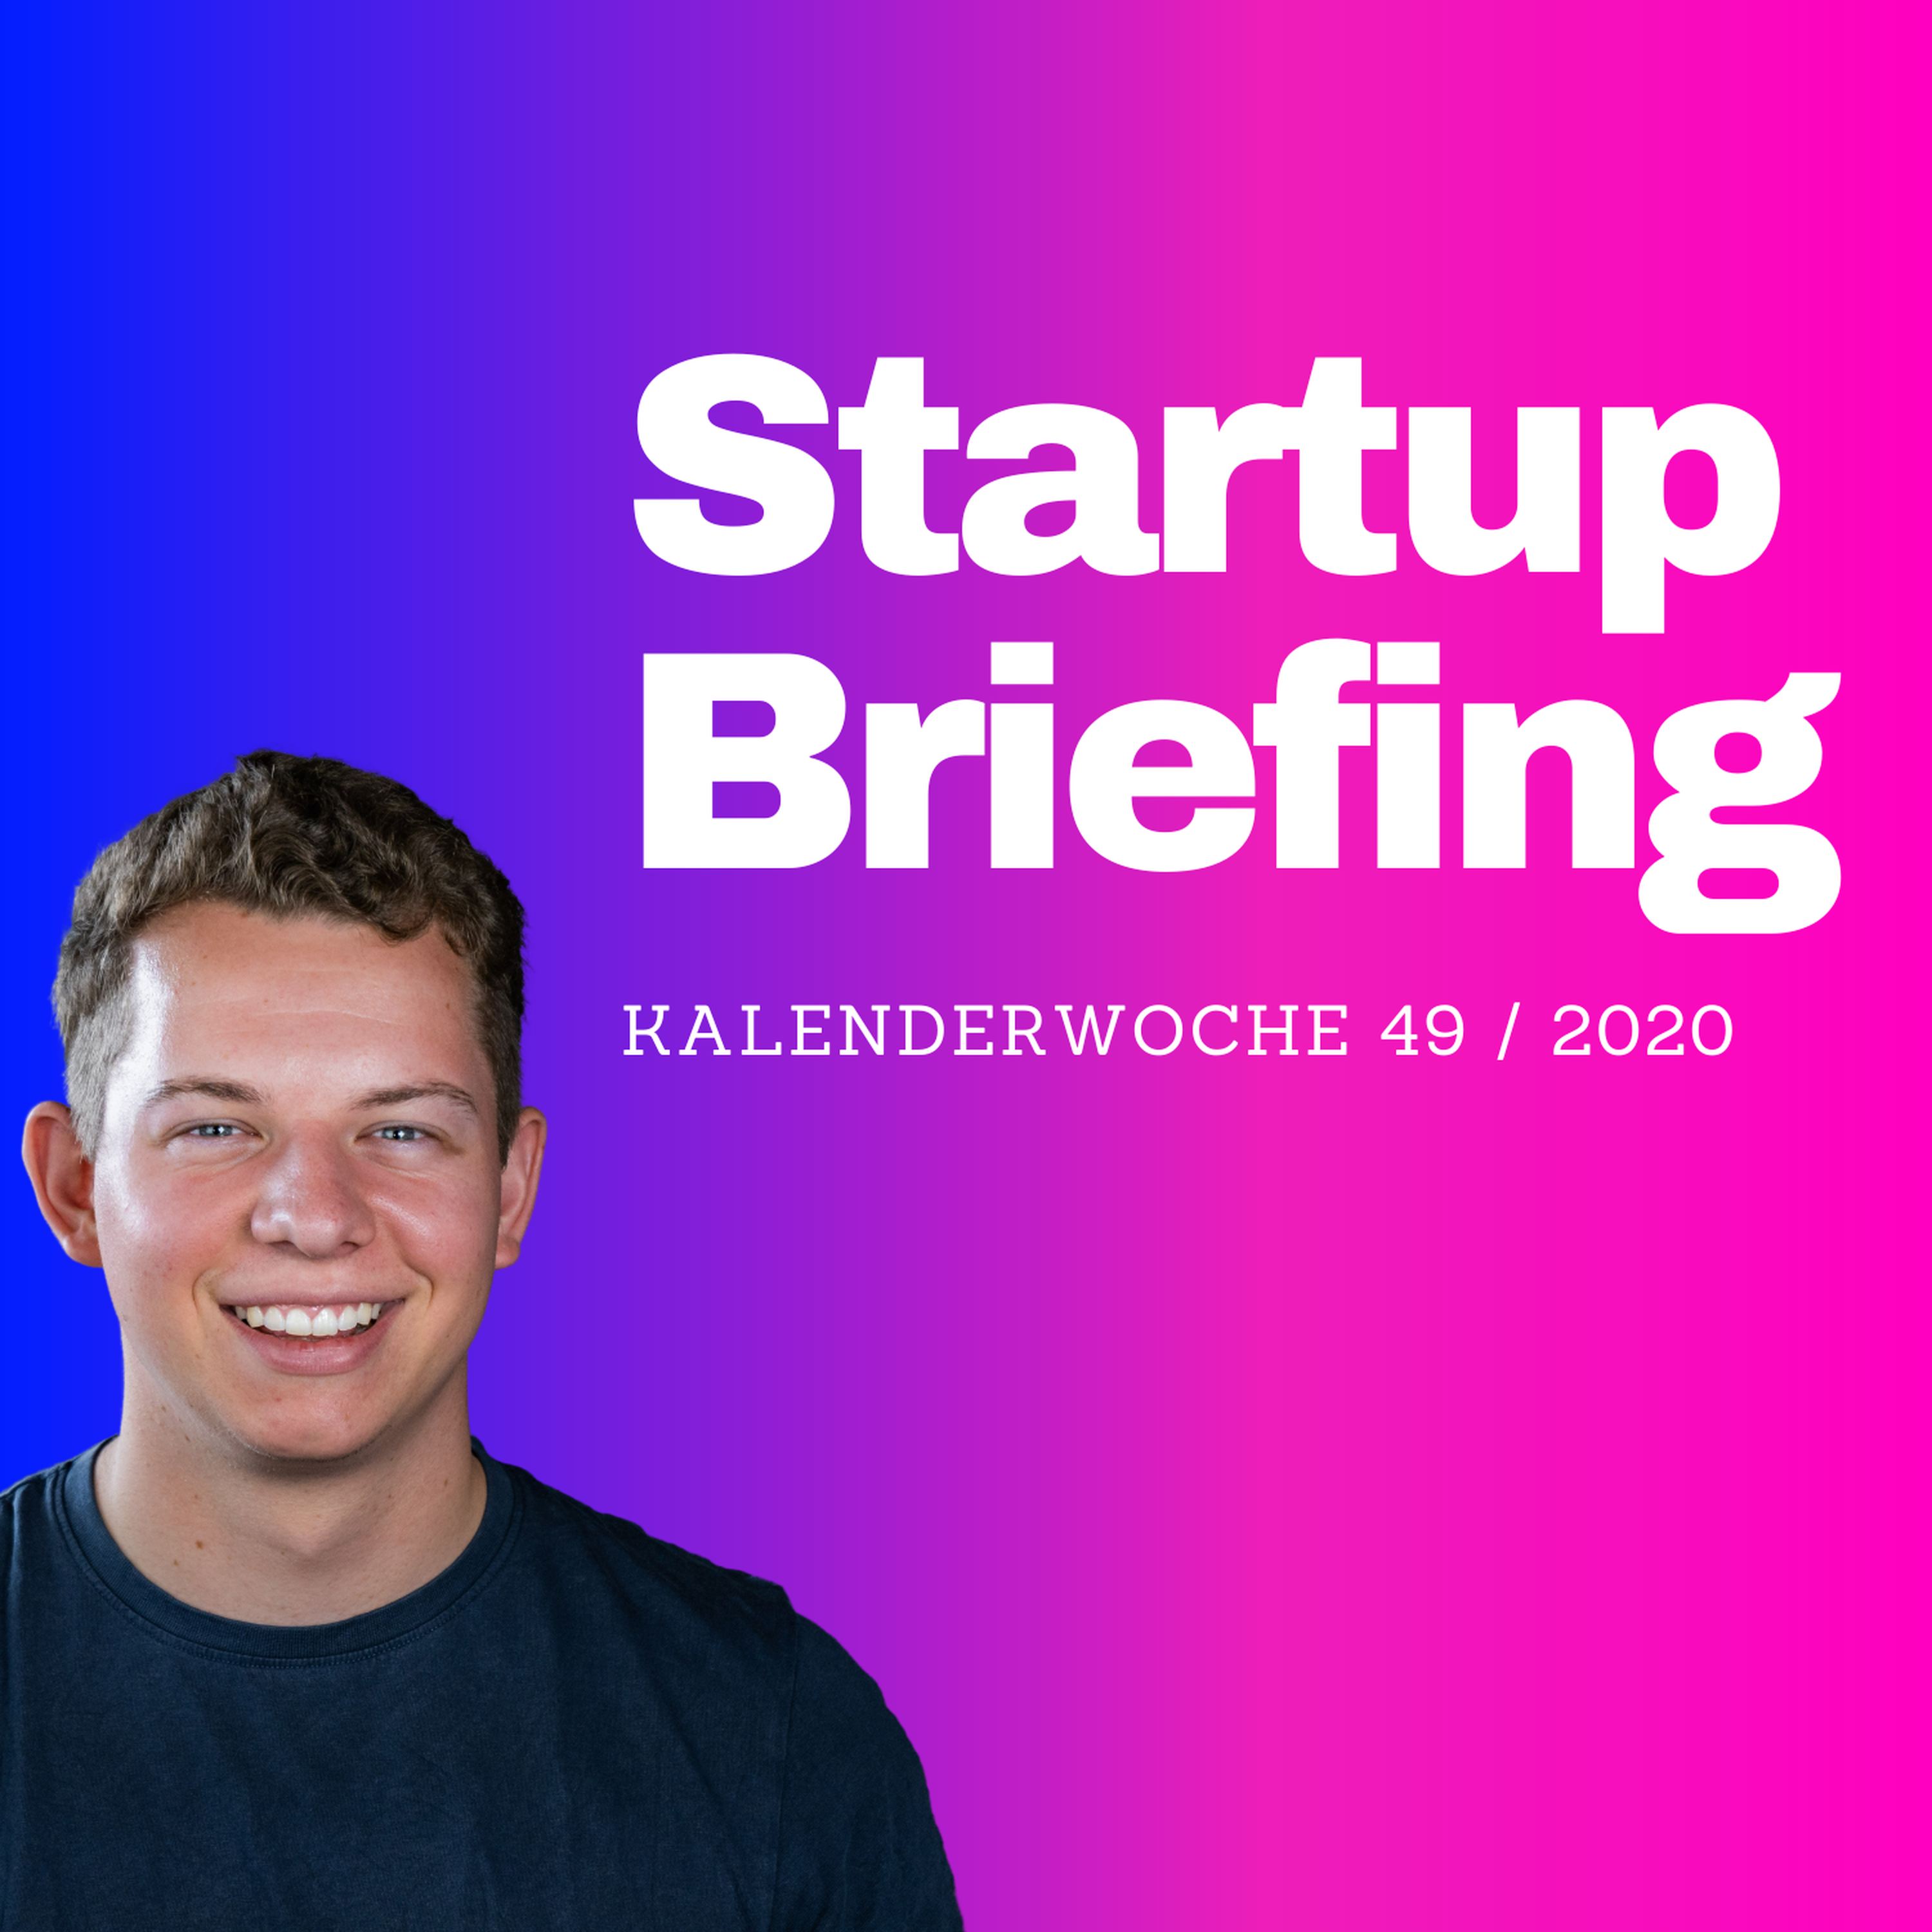 Startup Briefing - Salesforce kauft Slack, der Zukunftsfonds und Elon Musk in Berlin | KW49 Image